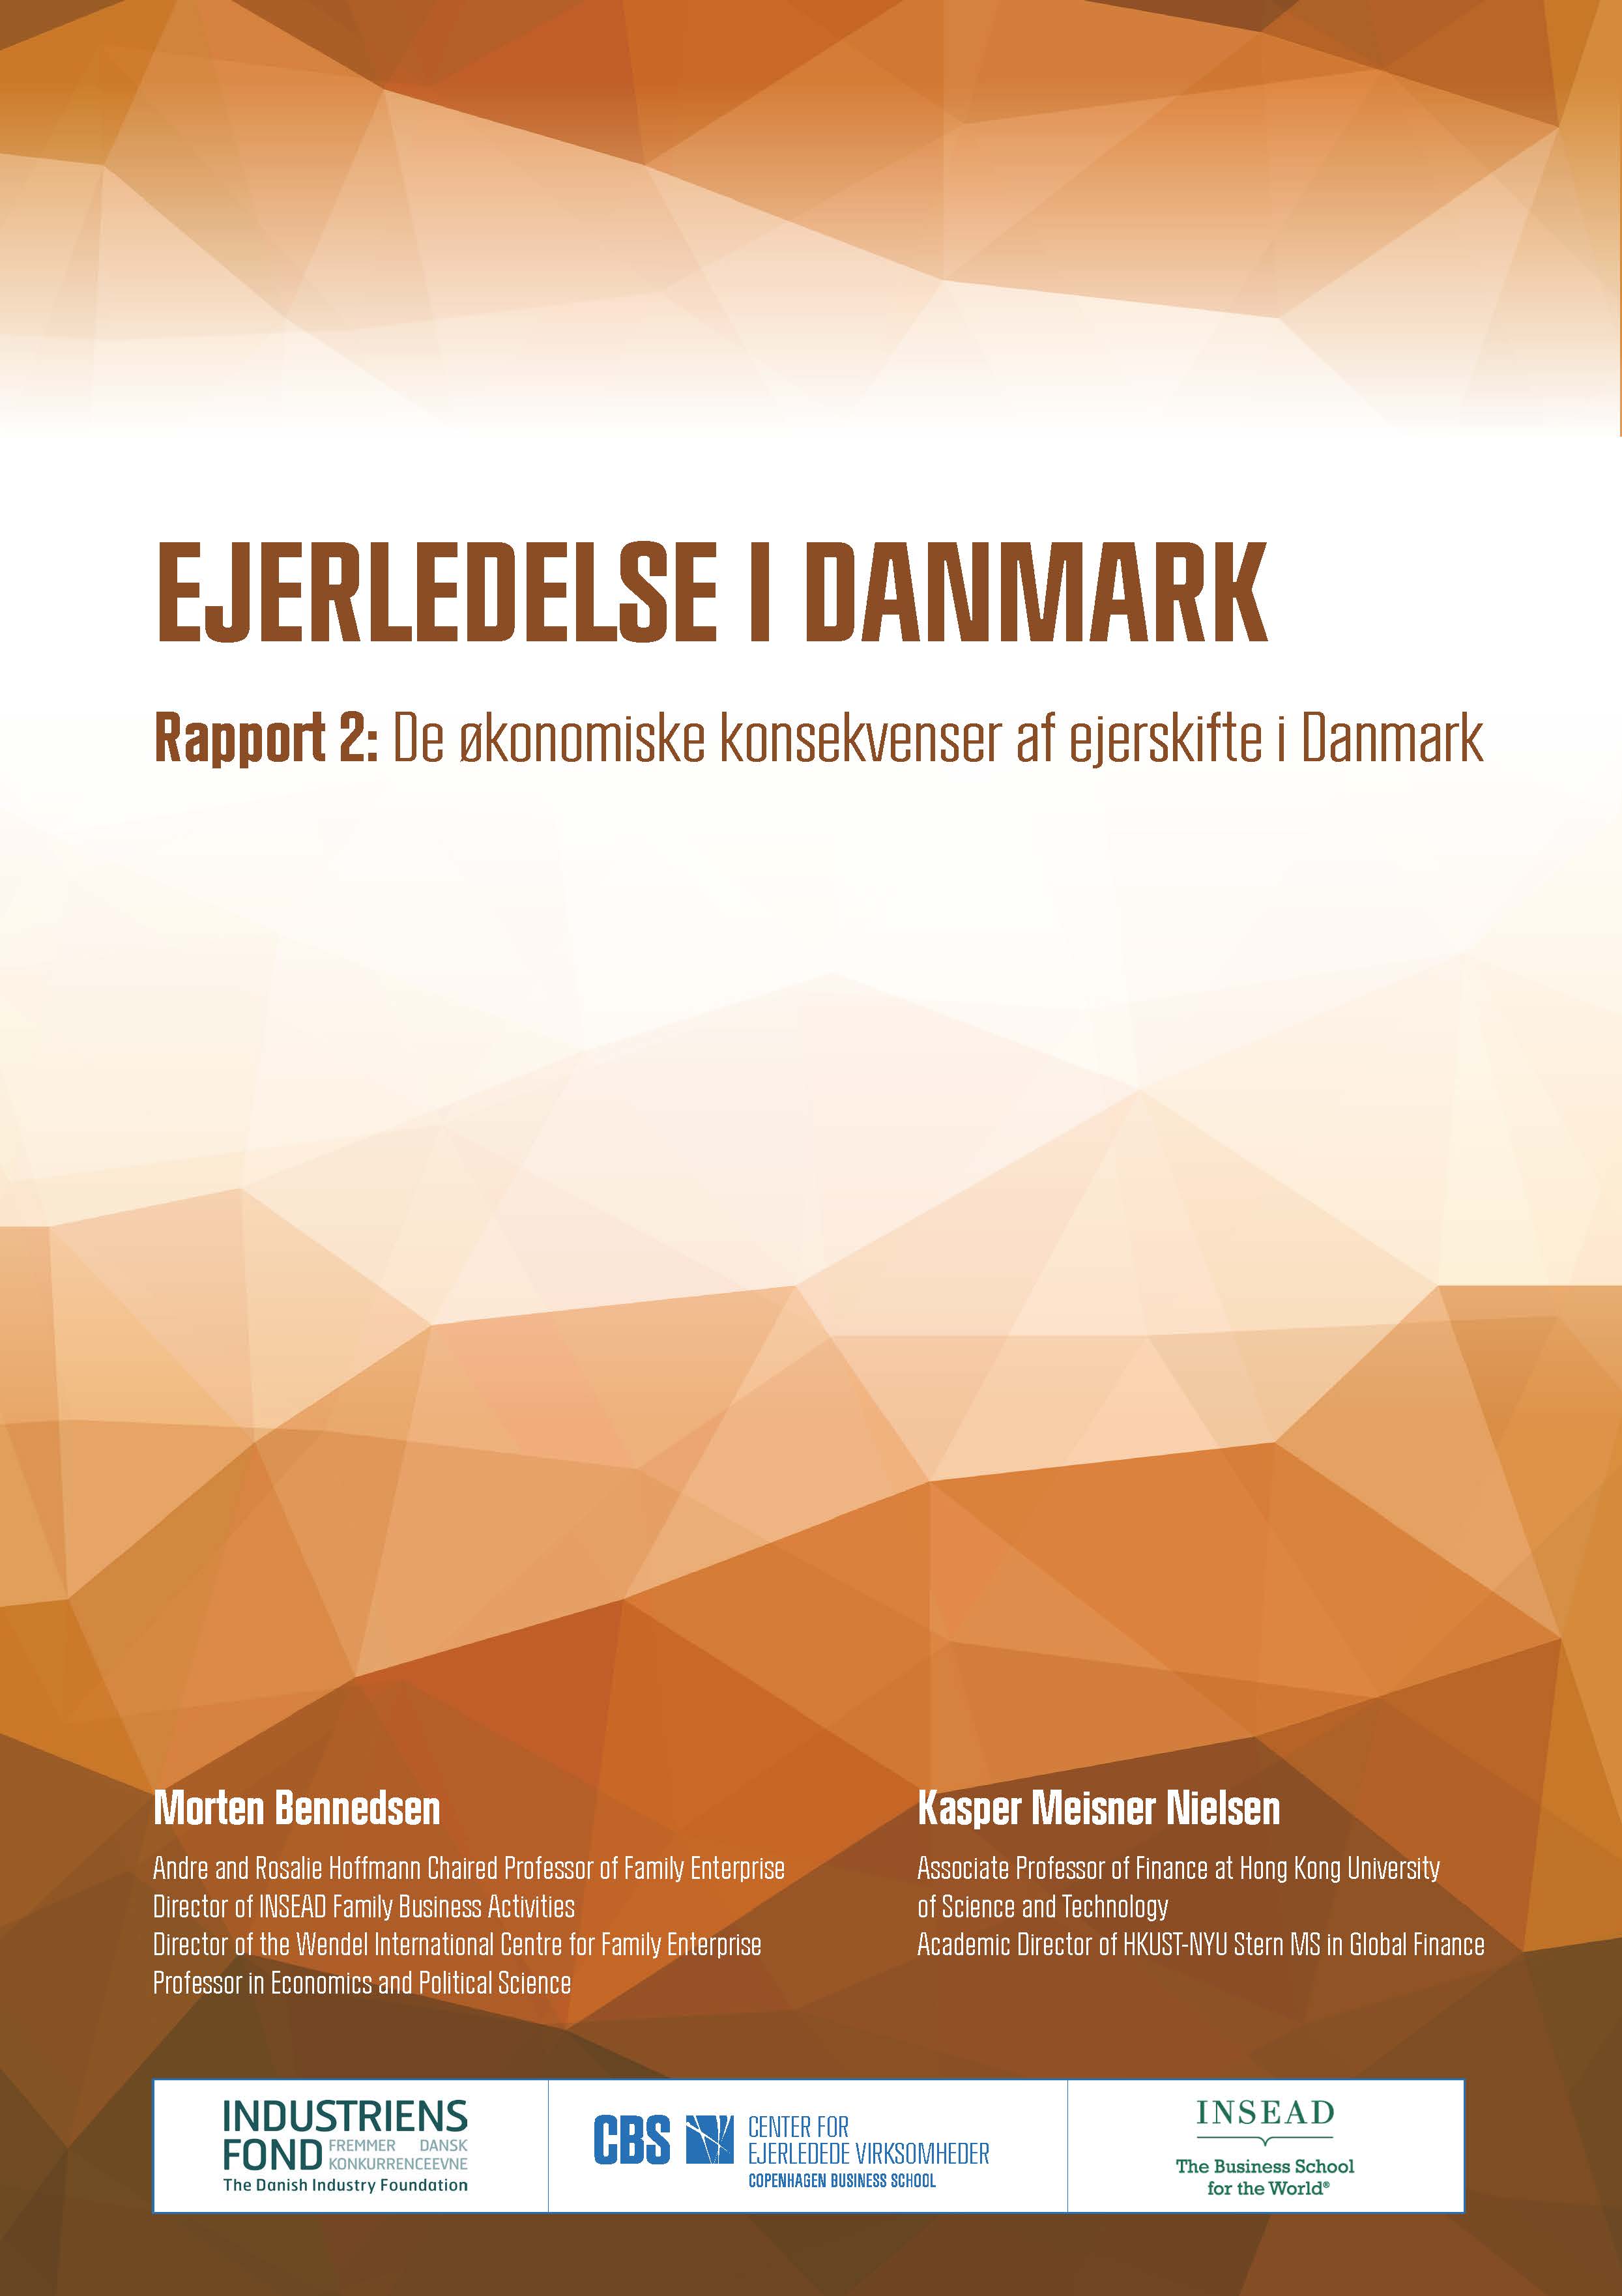 Billede af forsiden til rapporten: De økonomiske konsekvenser af ejerskifte i Danmark